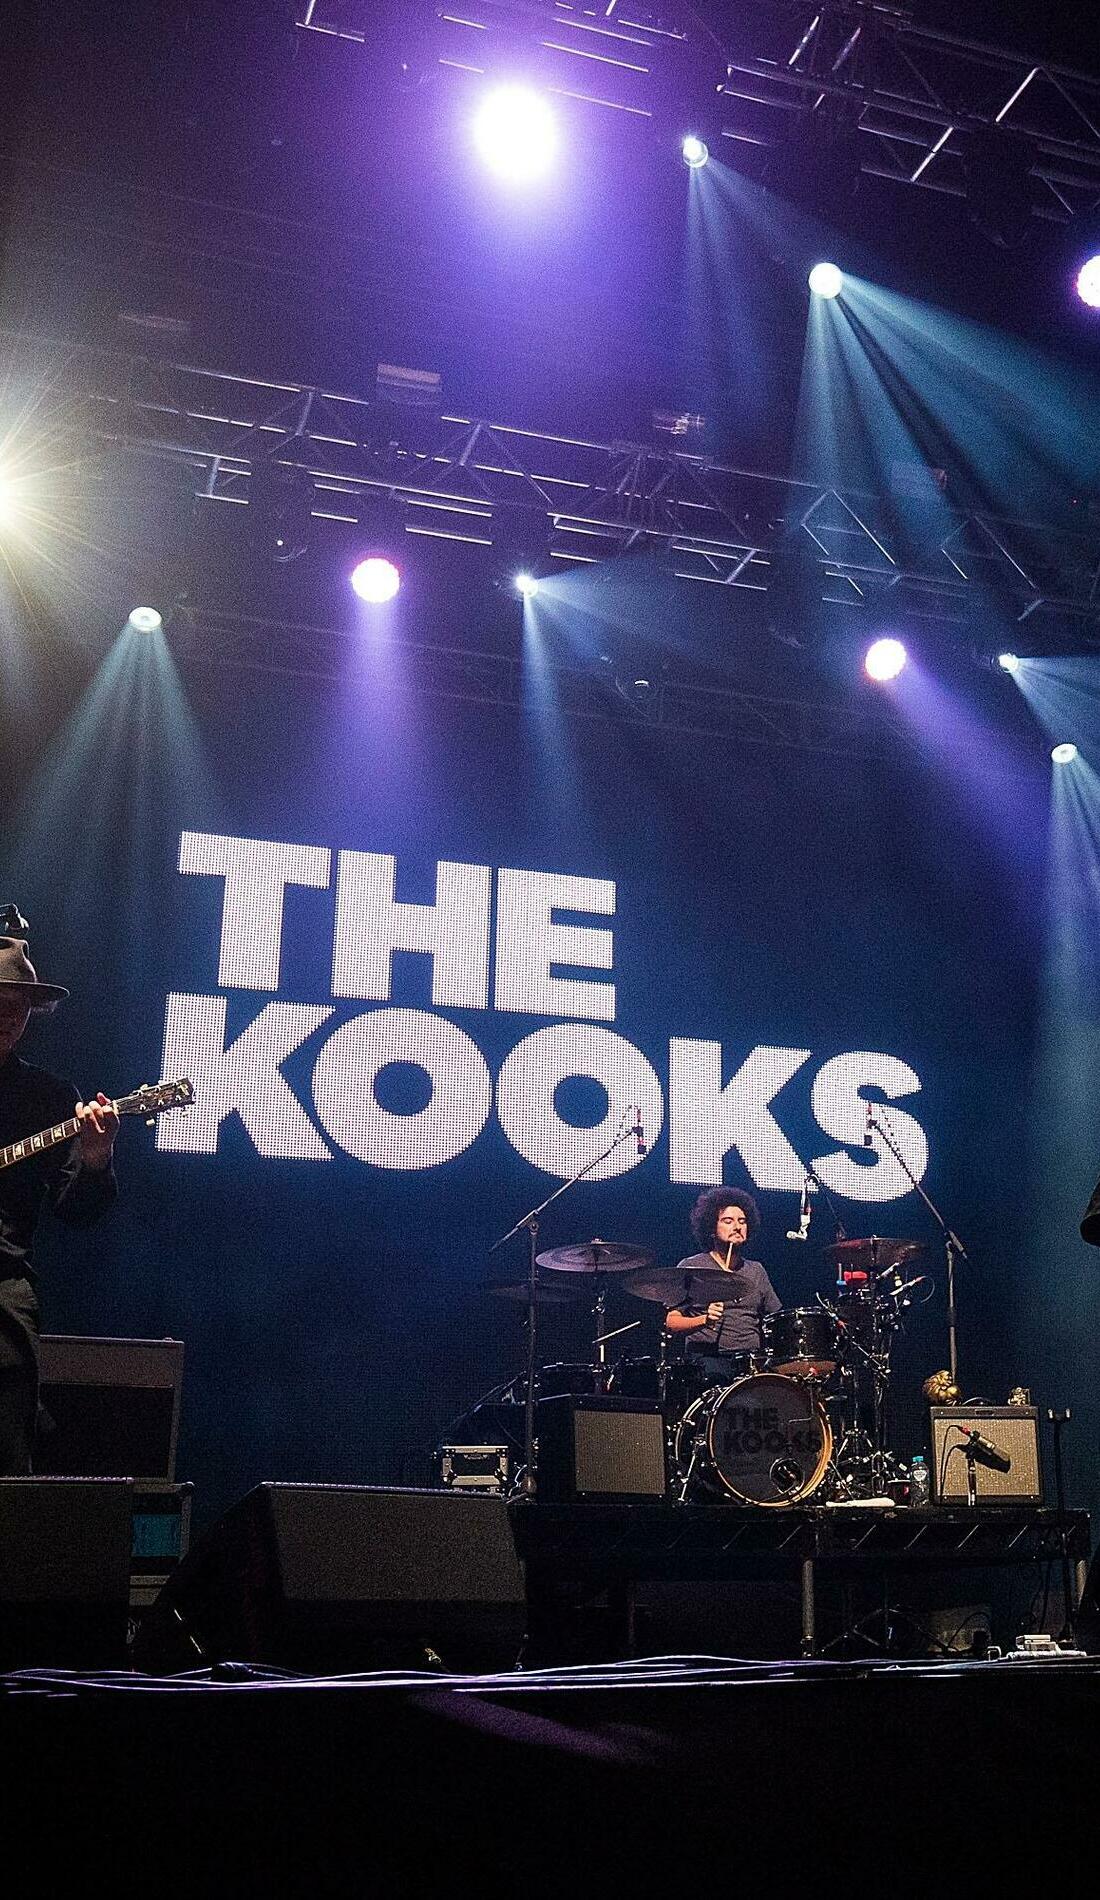 A The Kooks live event